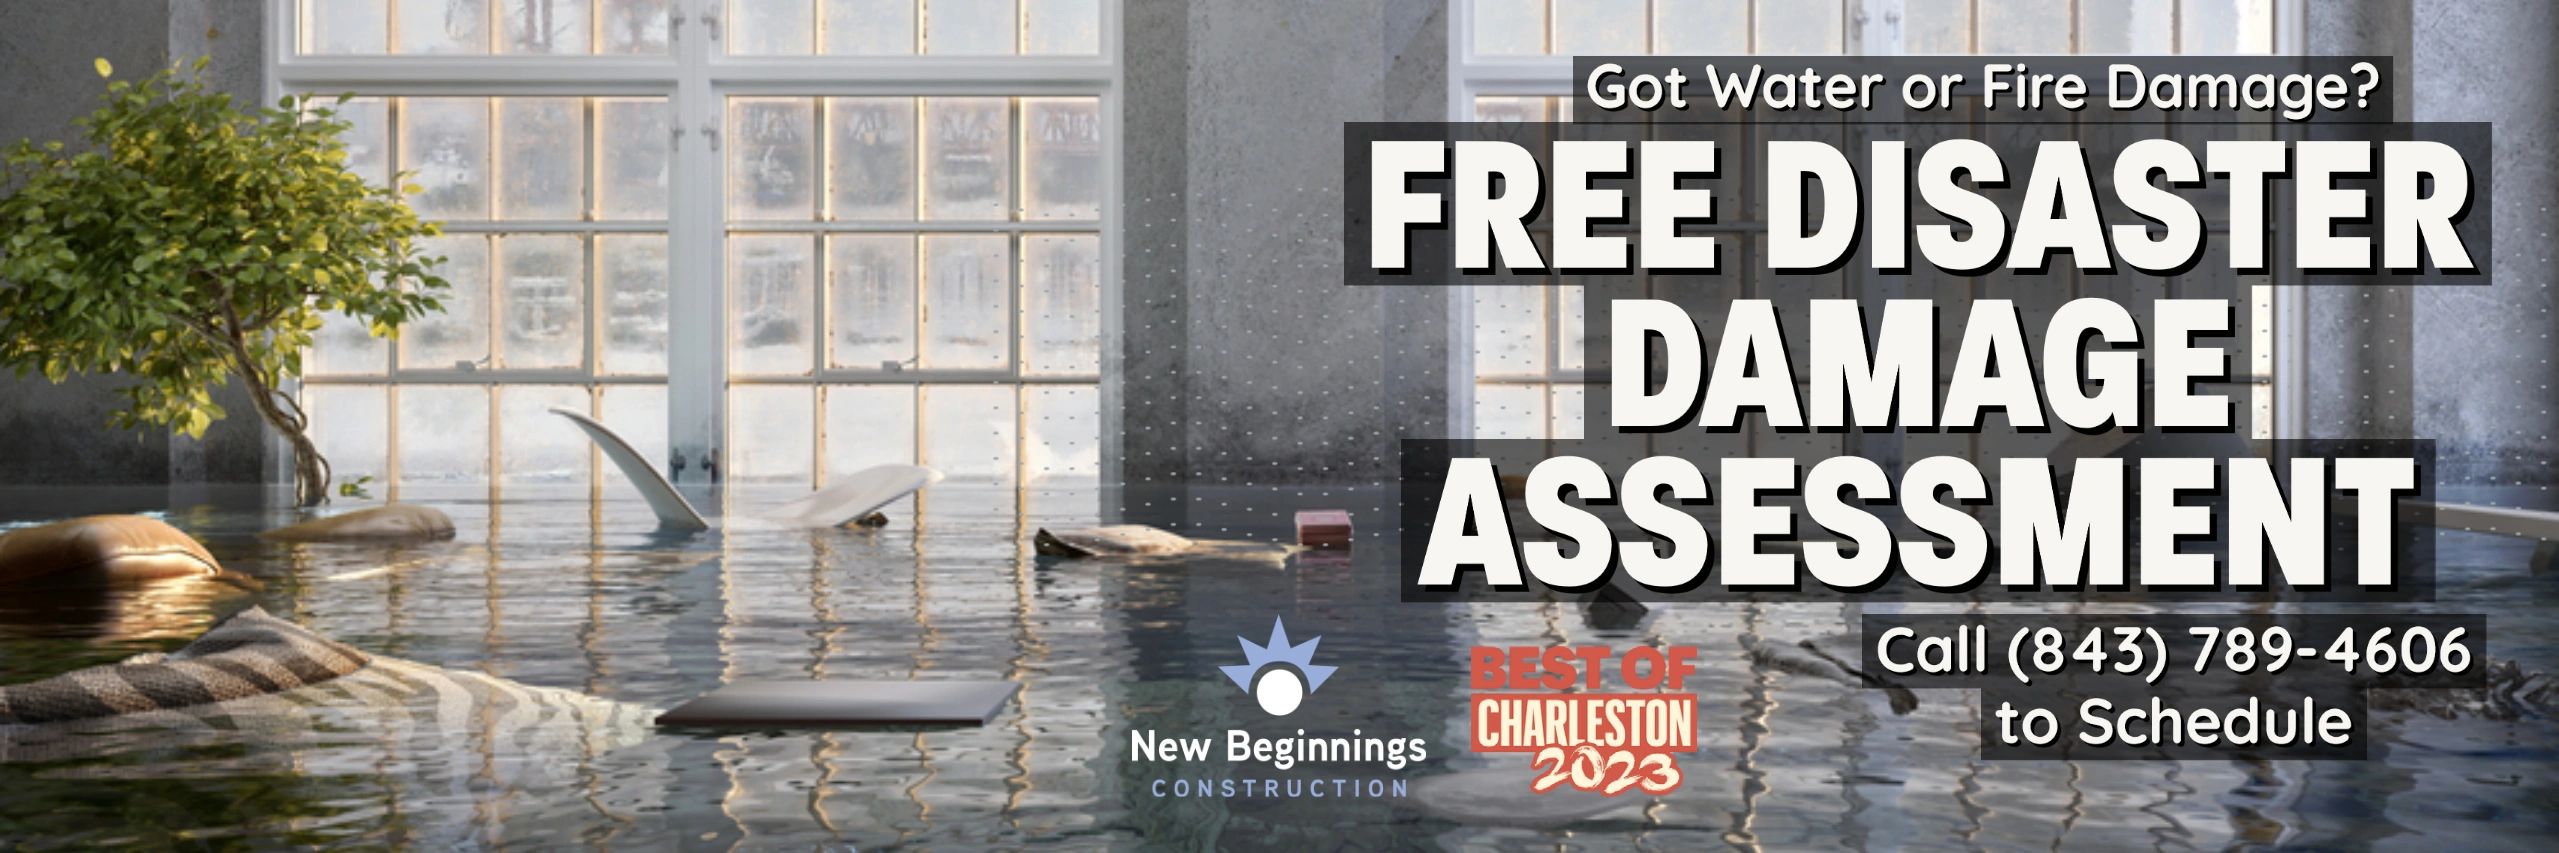 Charleston disaster damage assessment